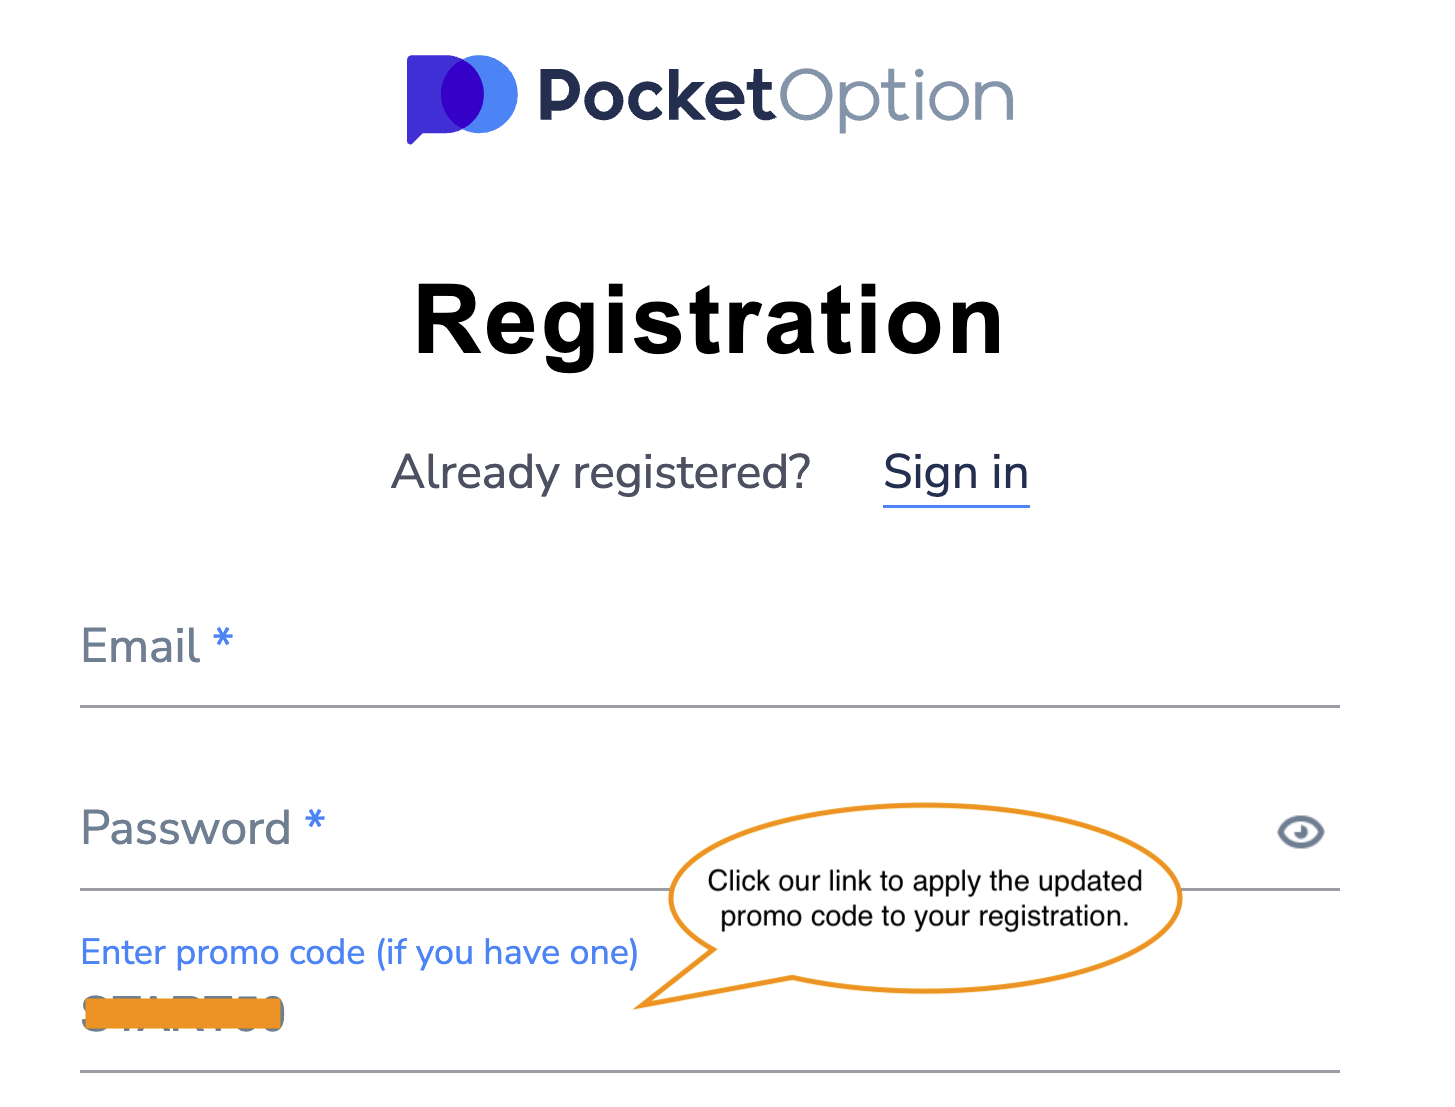 Pocket Option promo code upon registration